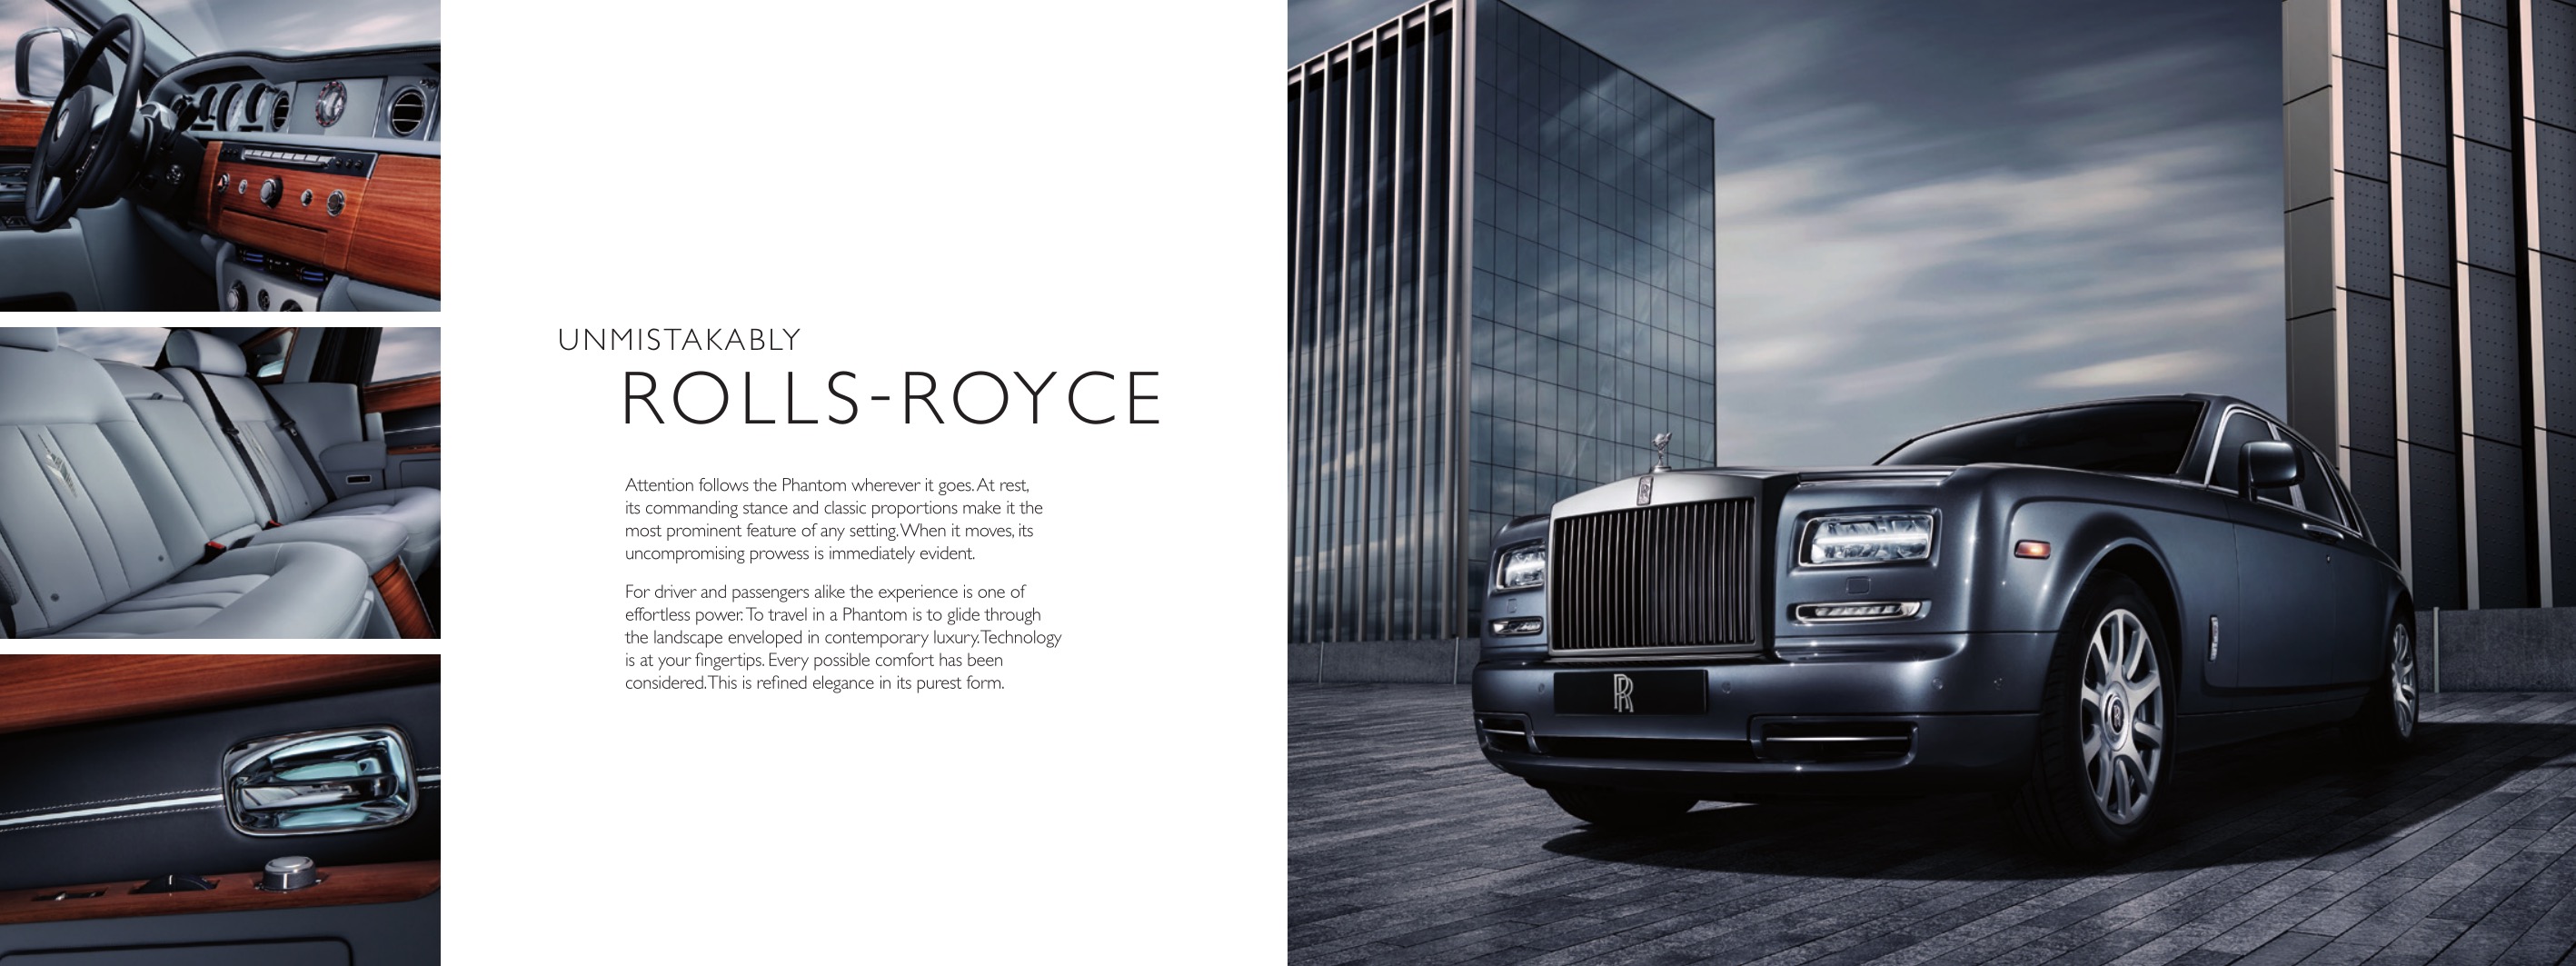 2016 Rolls-Royce Model Range Brochure Page 1